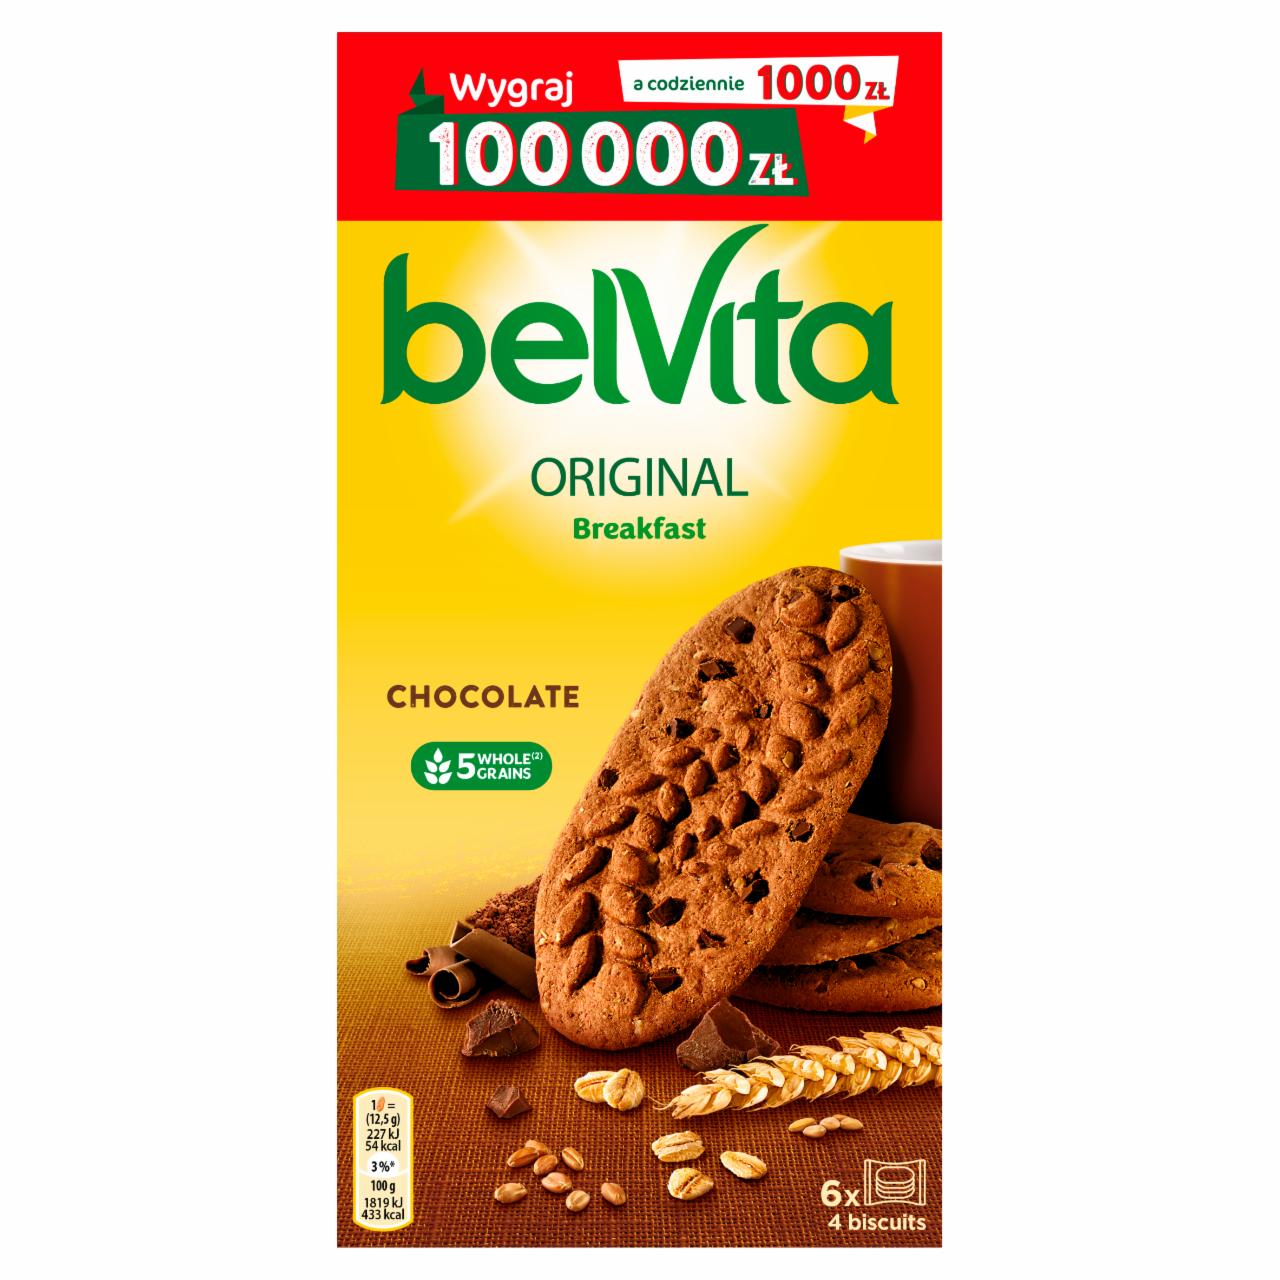 Фото - Печенье с какао и шоколадной крошкой Belvita